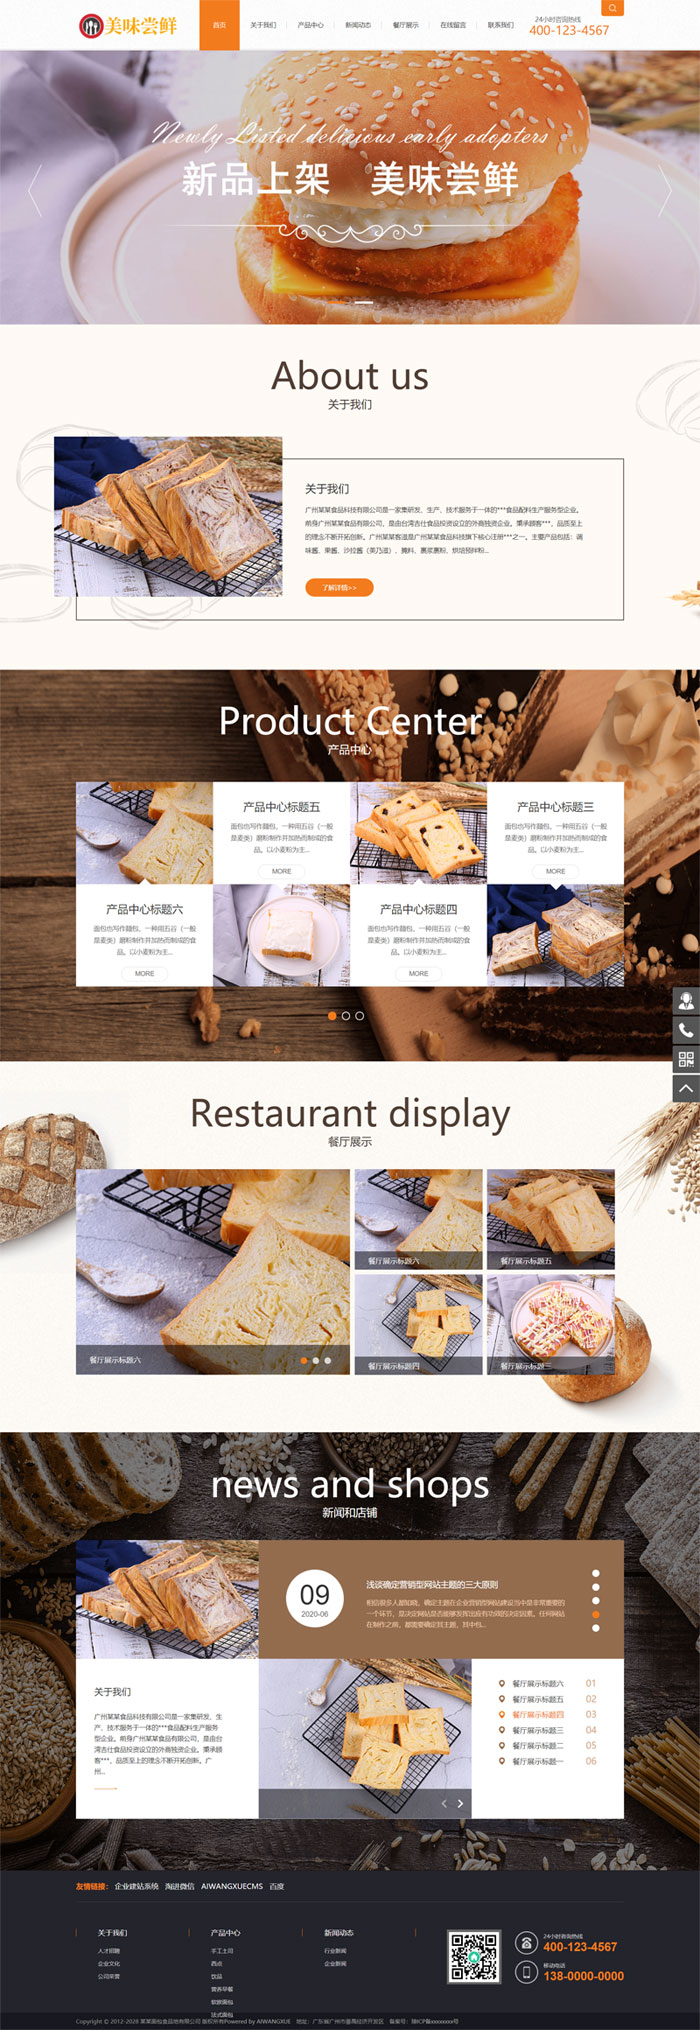 蛋糕面包食品类企业网站模板(带手机版)展示图